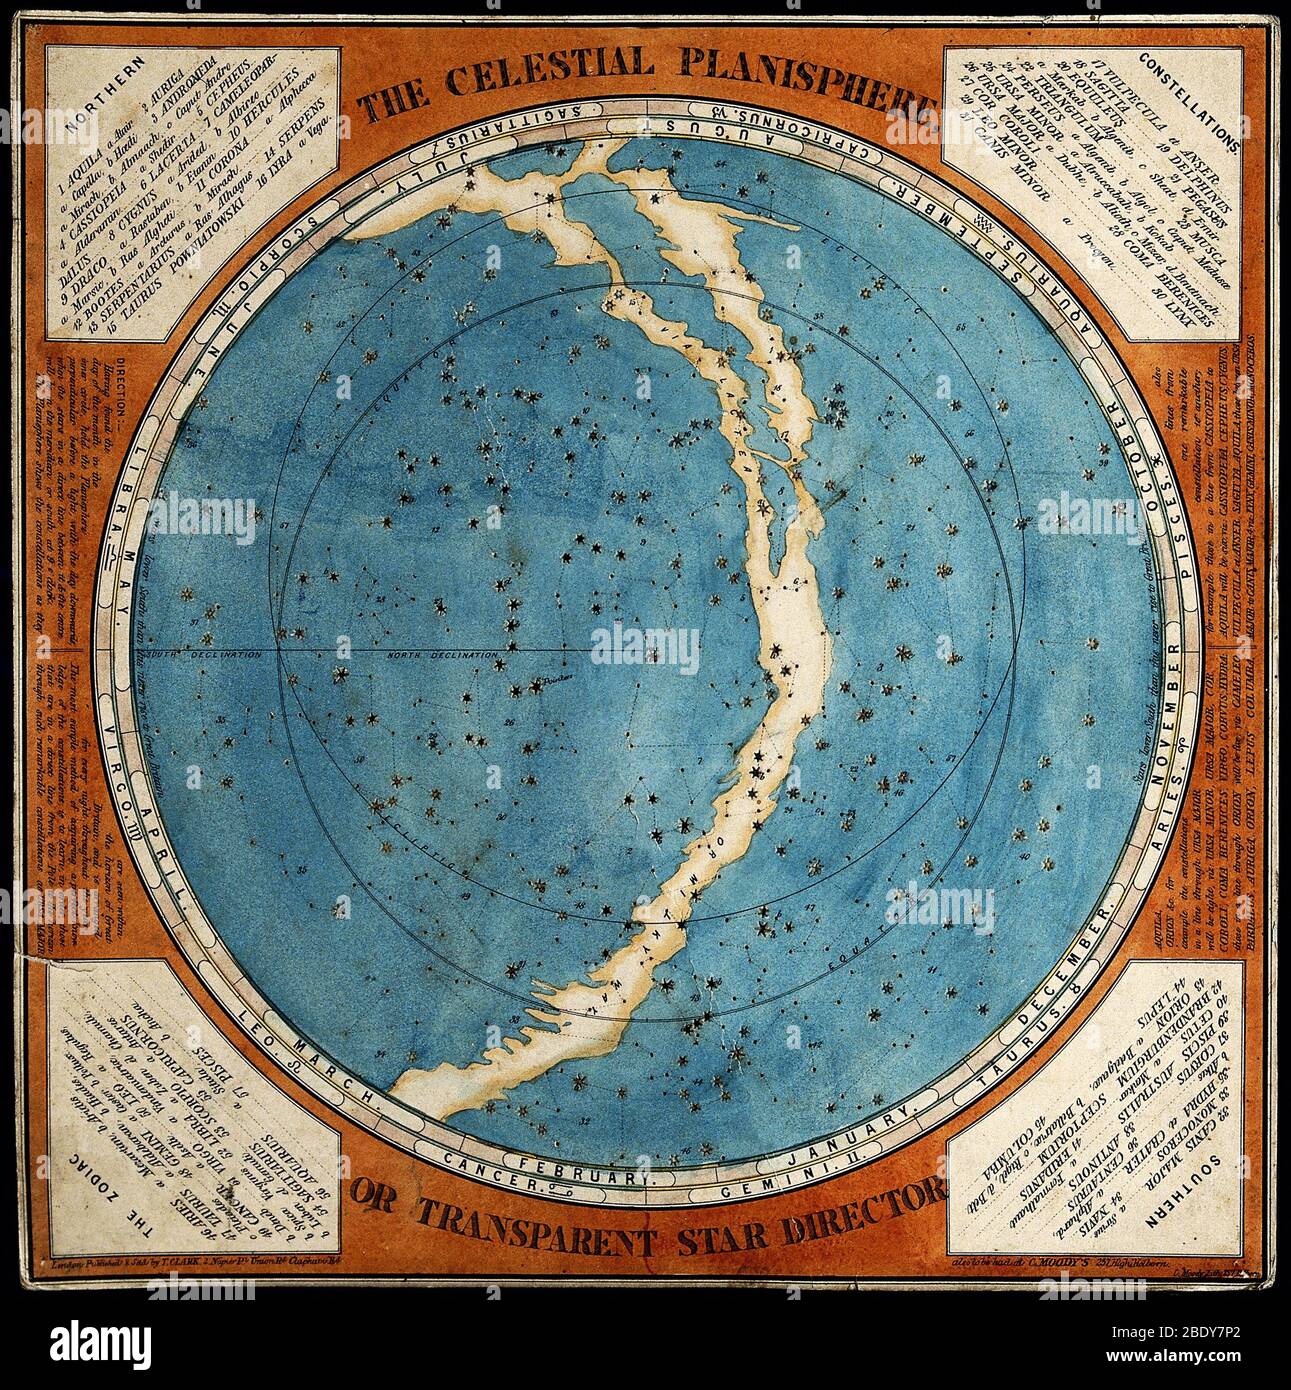 Celestial Planisphere, 1777 Stock Photo